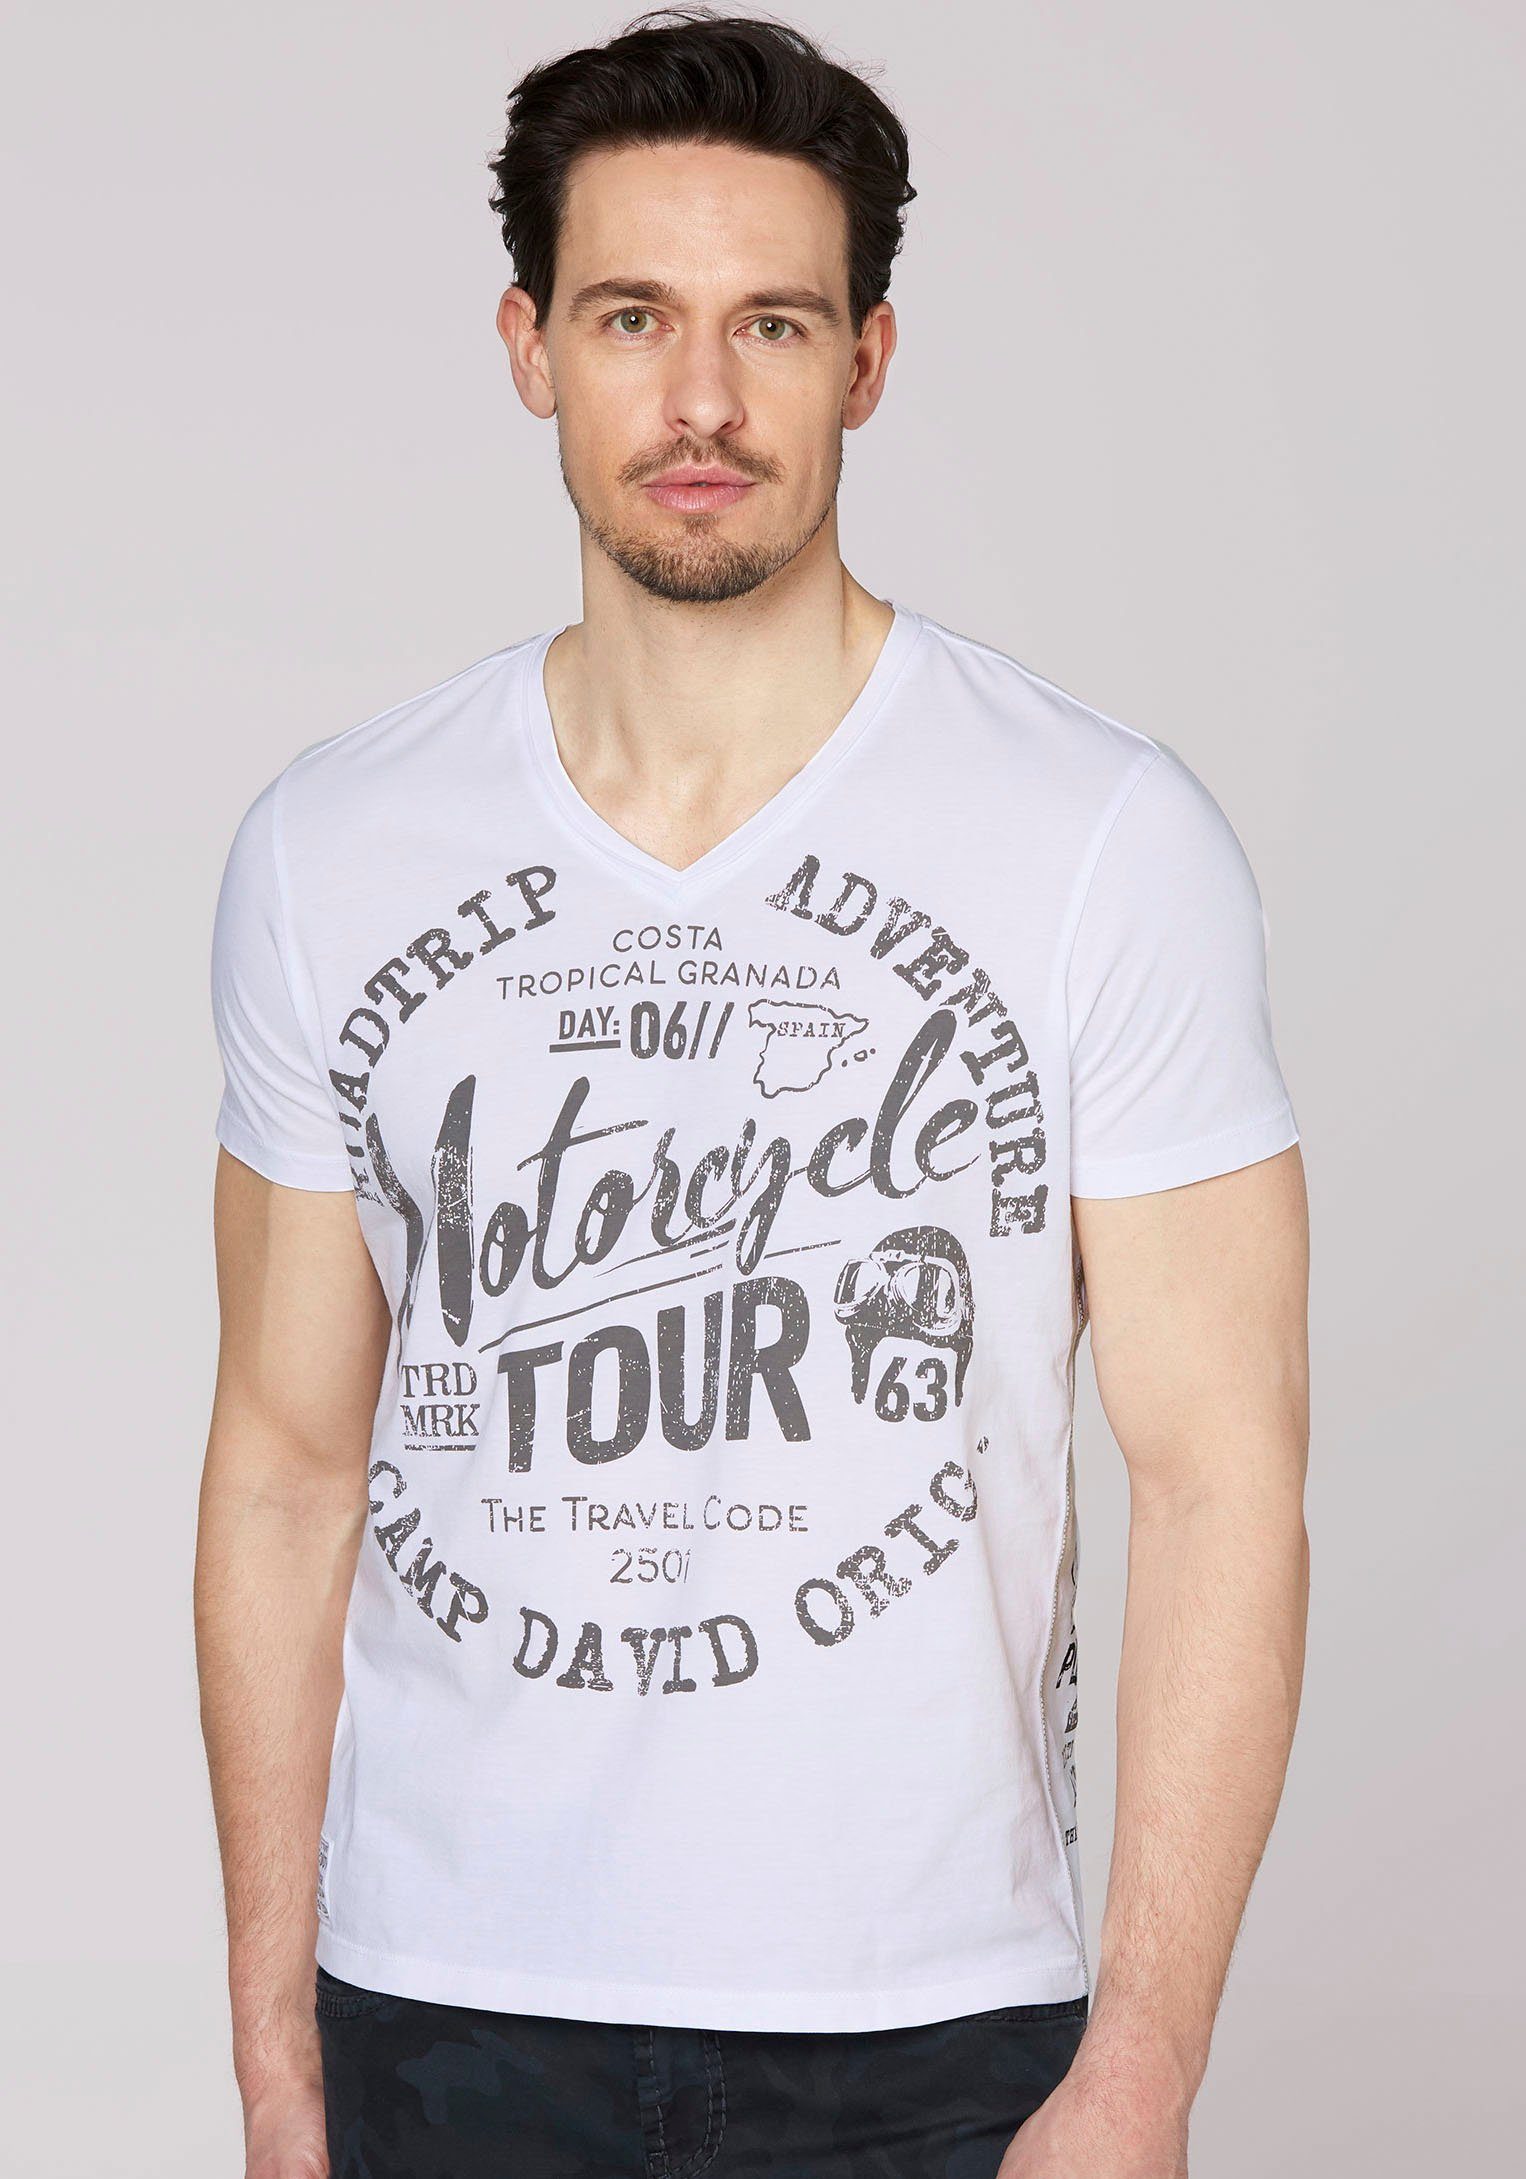 CAMP DAVID T-Shirt mit Schrift-Print, V-Shirt von Camp David online kaufen  | OTTO